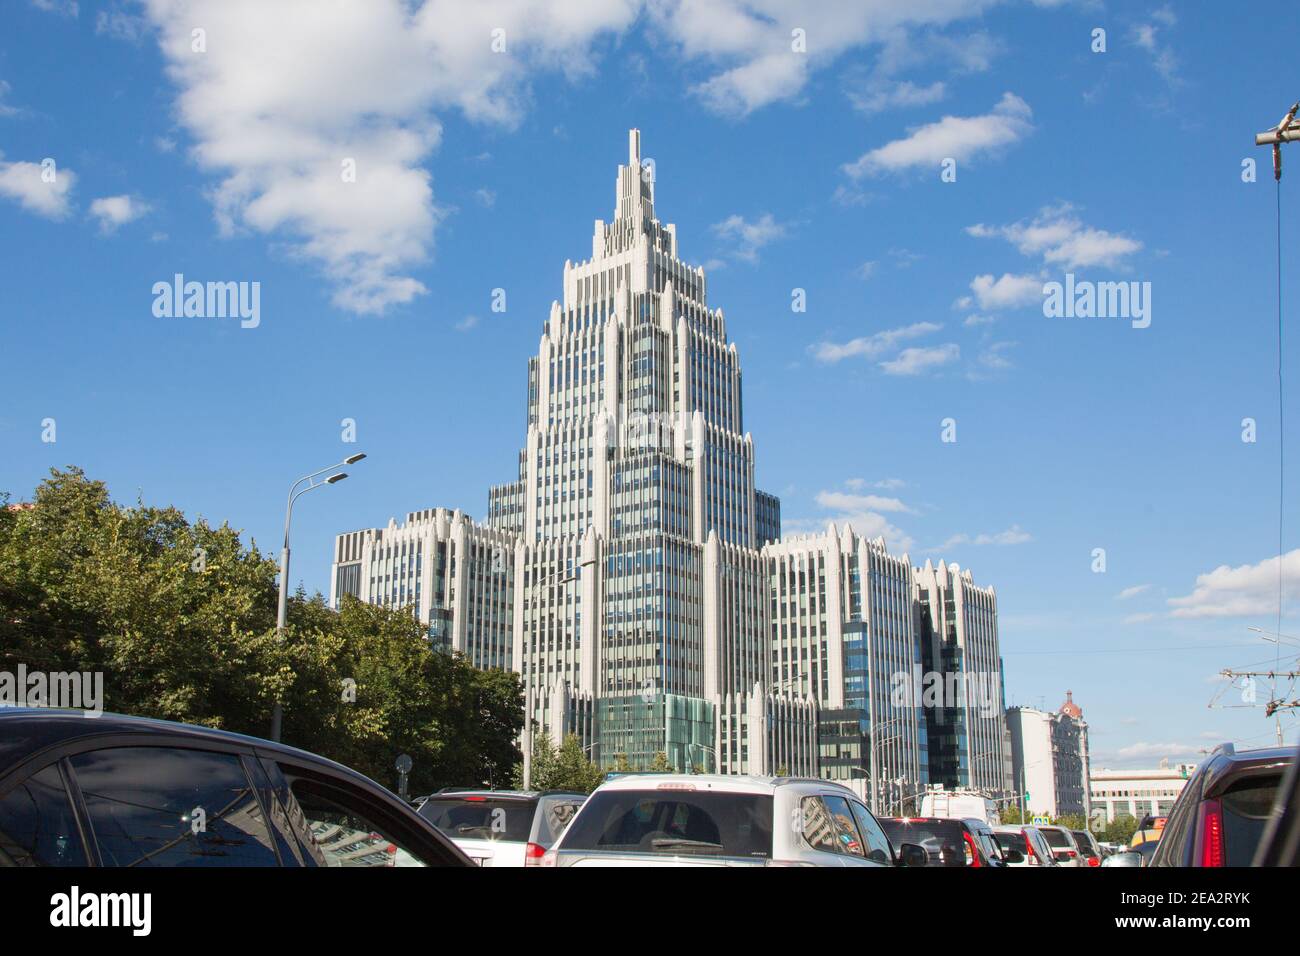 MOSCOU-RUSSIE: Bâtiment de l'arsenal. C'est un centre d'affaires. Vue depuis la rue Sadovaya. Banque D'Images